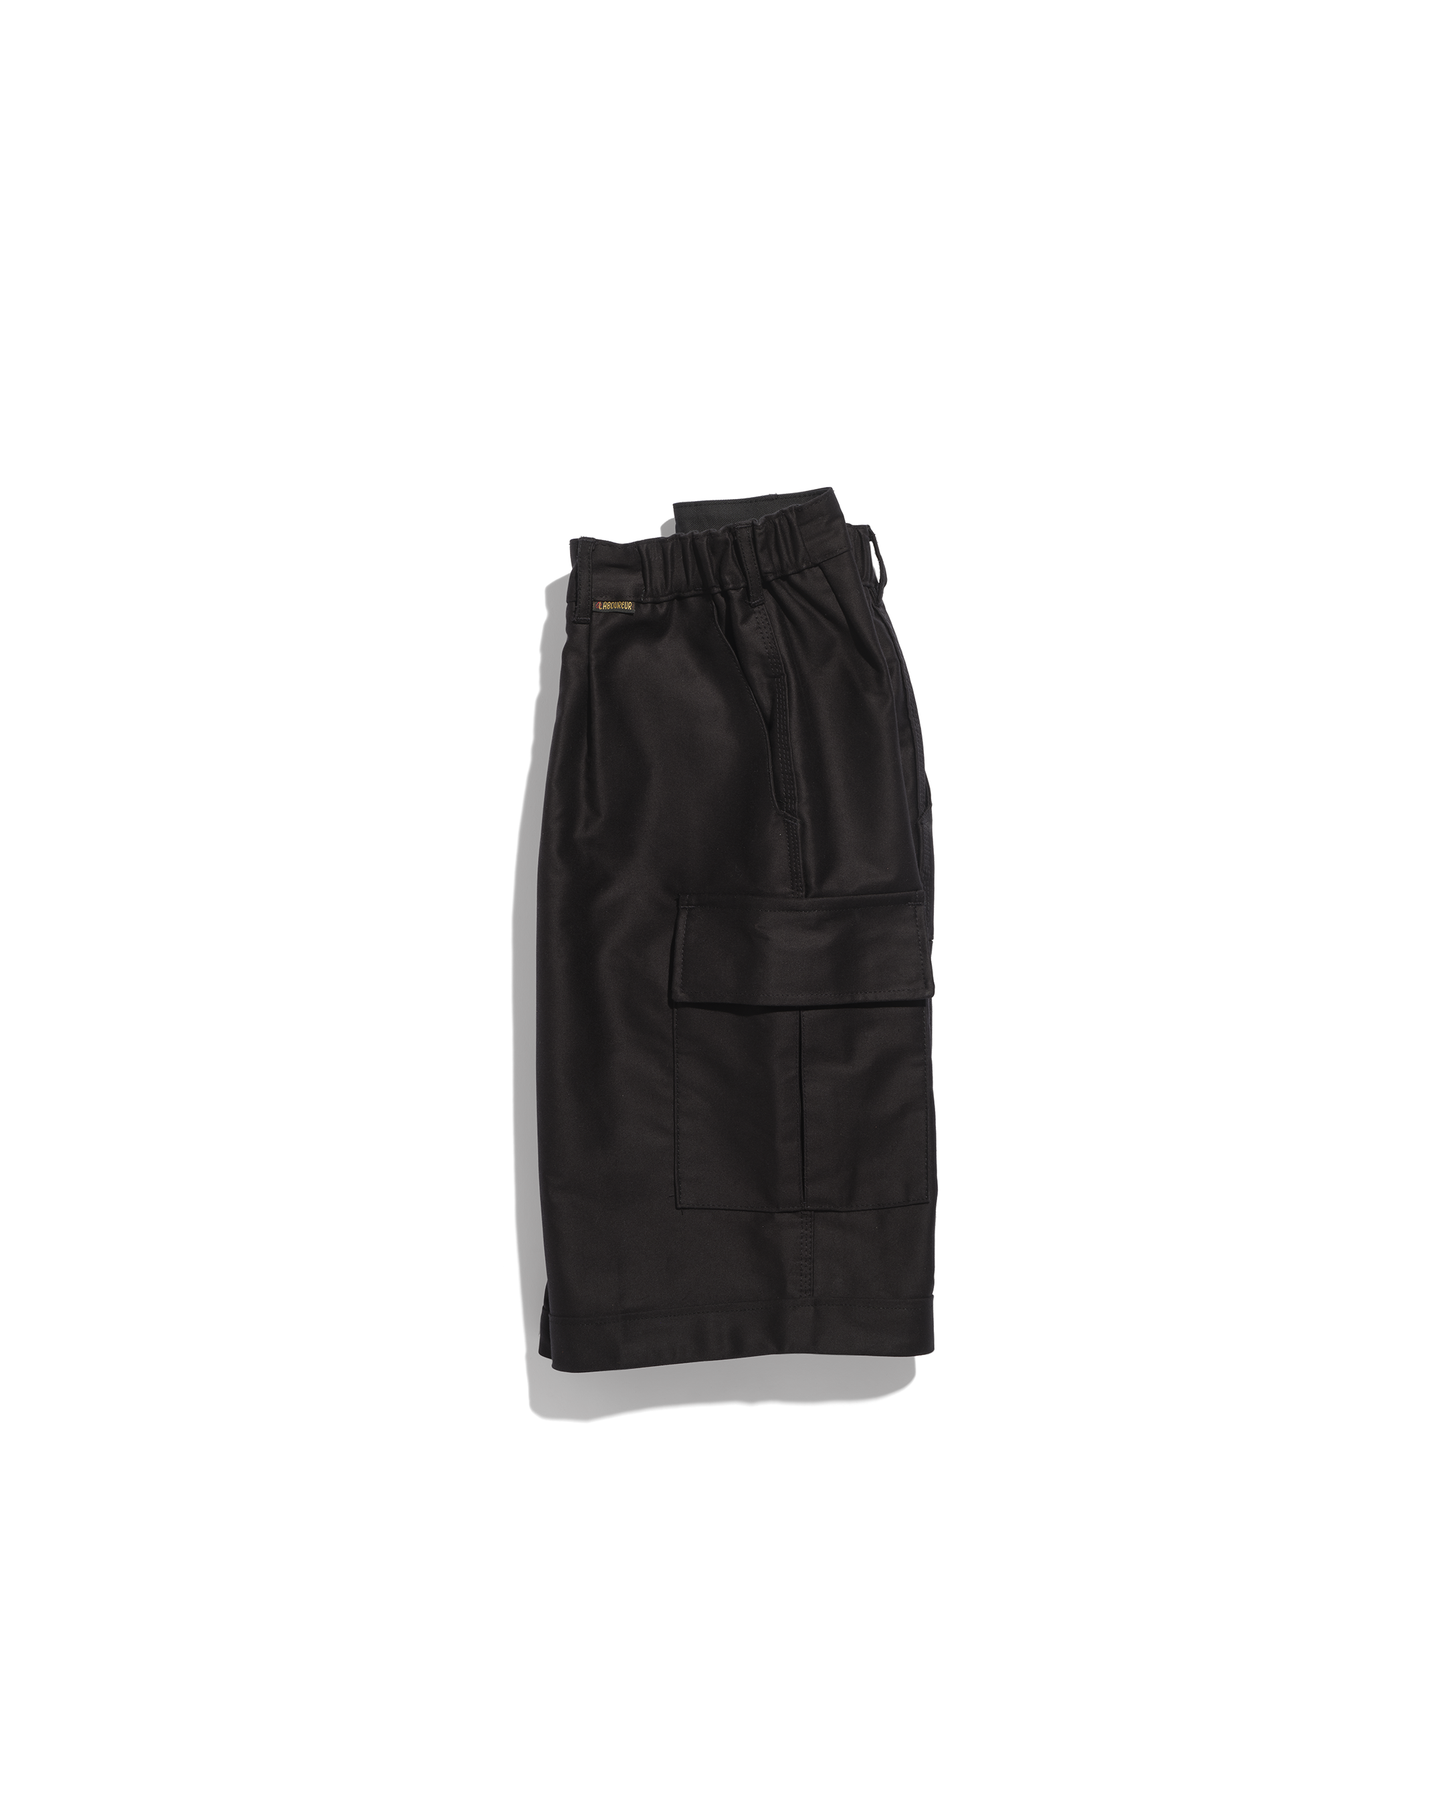 Largeot moleskine Bermuda shorts with pockets